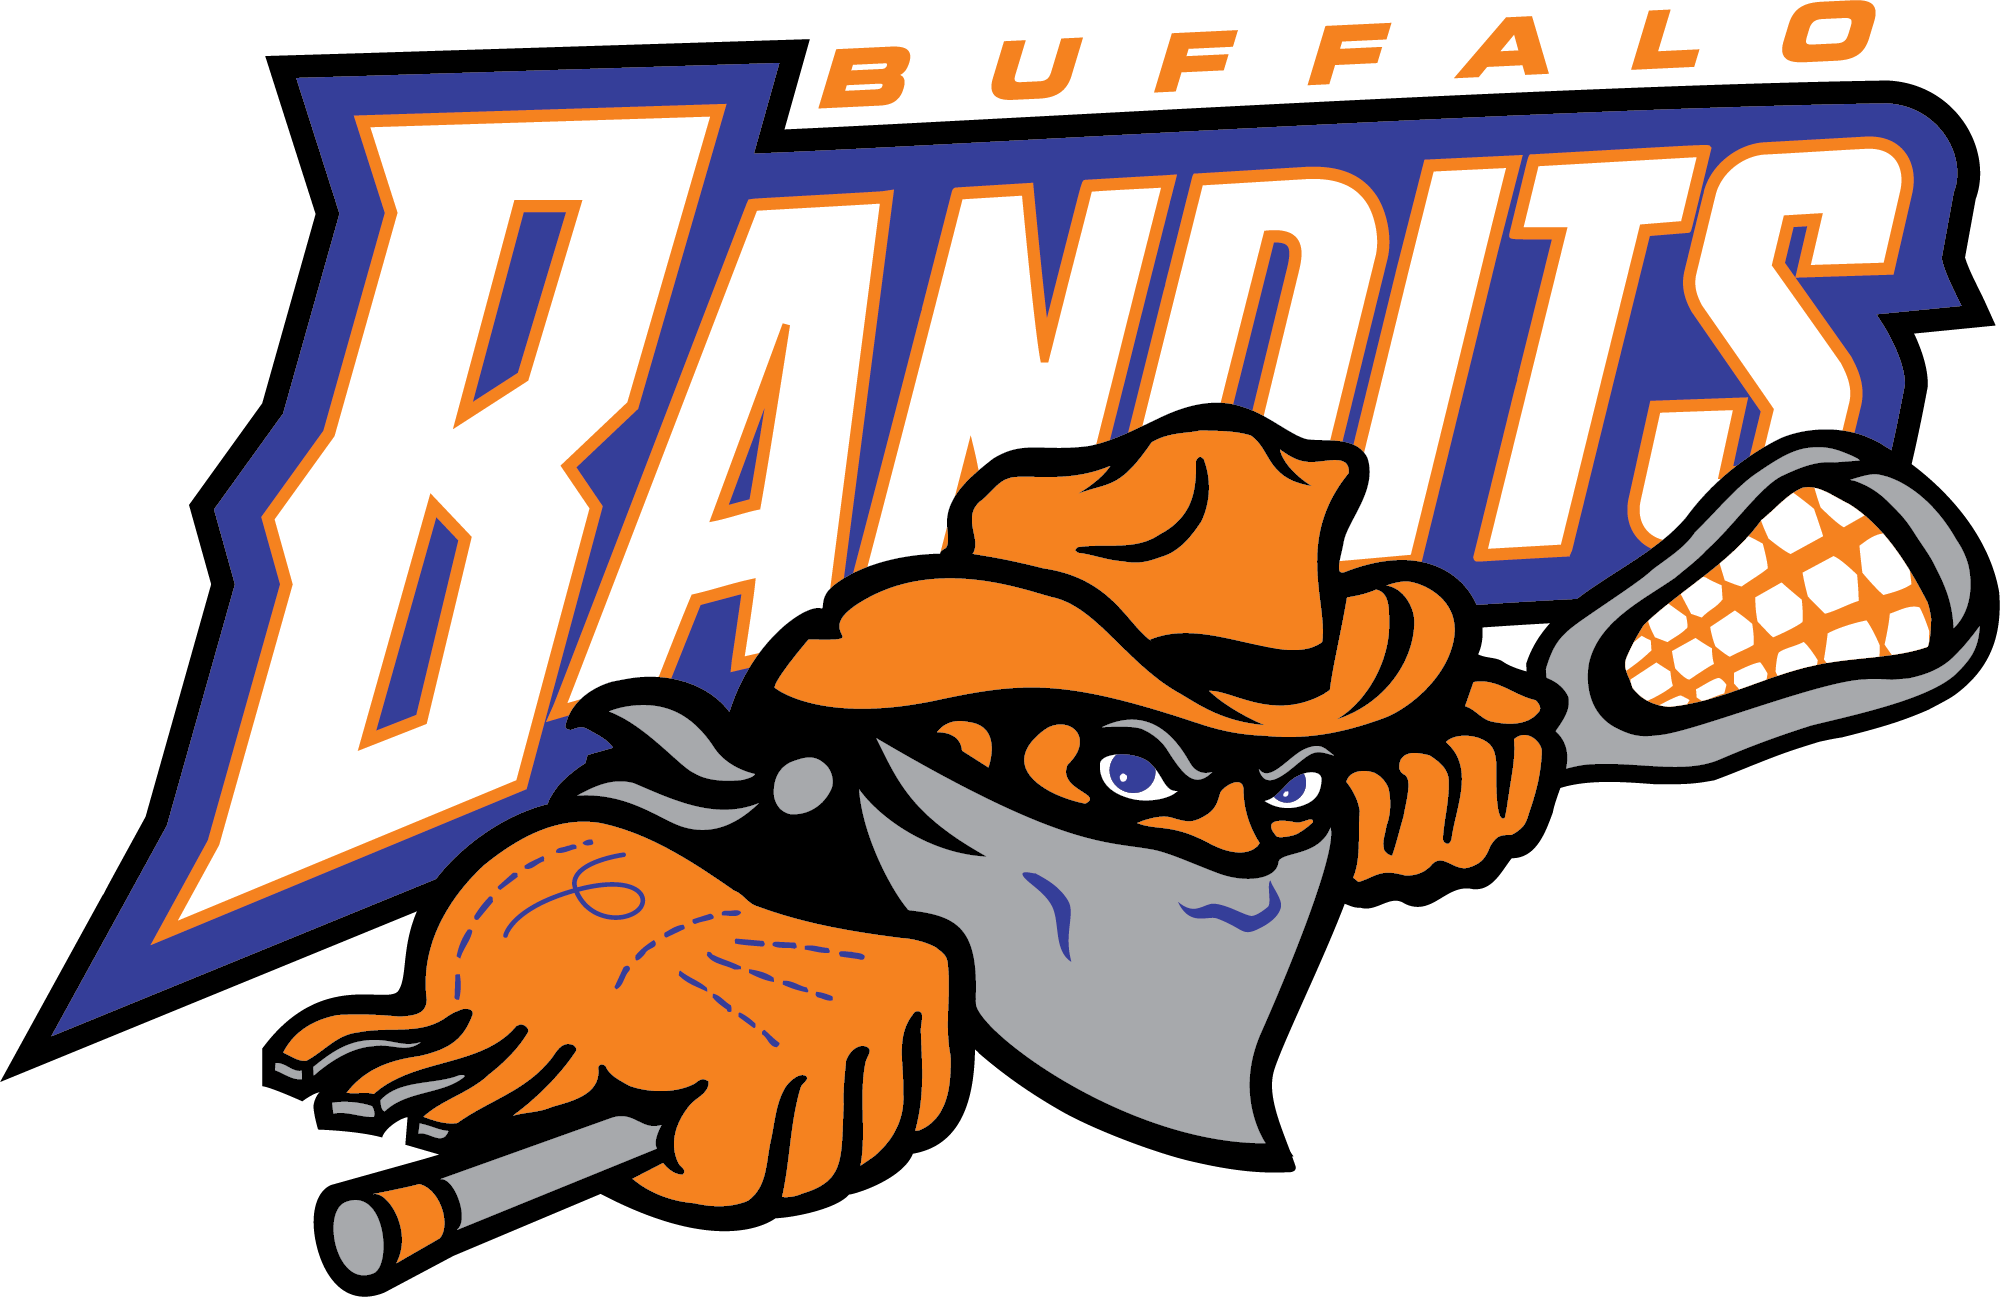 Official Real Estate Partner Of The Buffalo Bandits - Buffalo Bandits Lacrosse Logo (2000x1297)